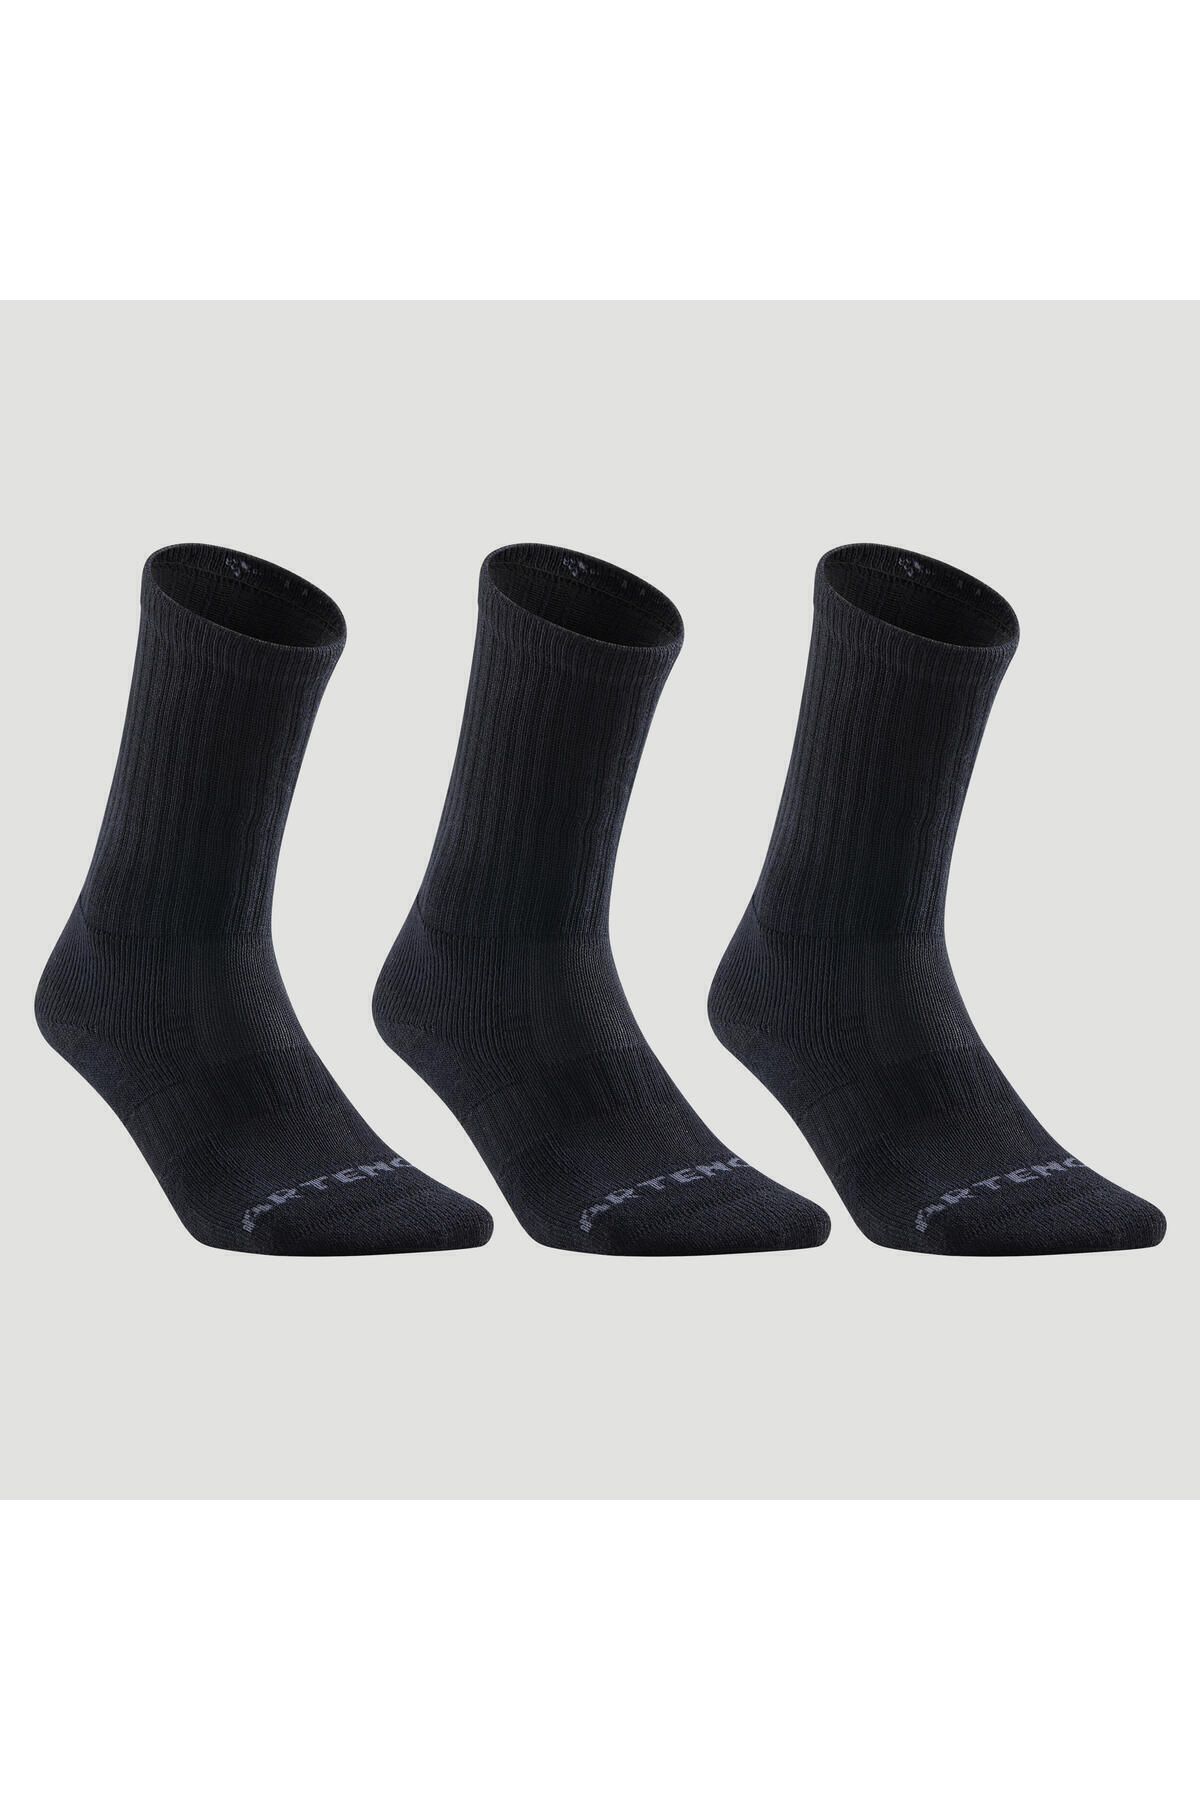 Decathlon Uzun Boy Konçlu Tenis Çorabı - 3'lü Paket - Siyah - Rs 500